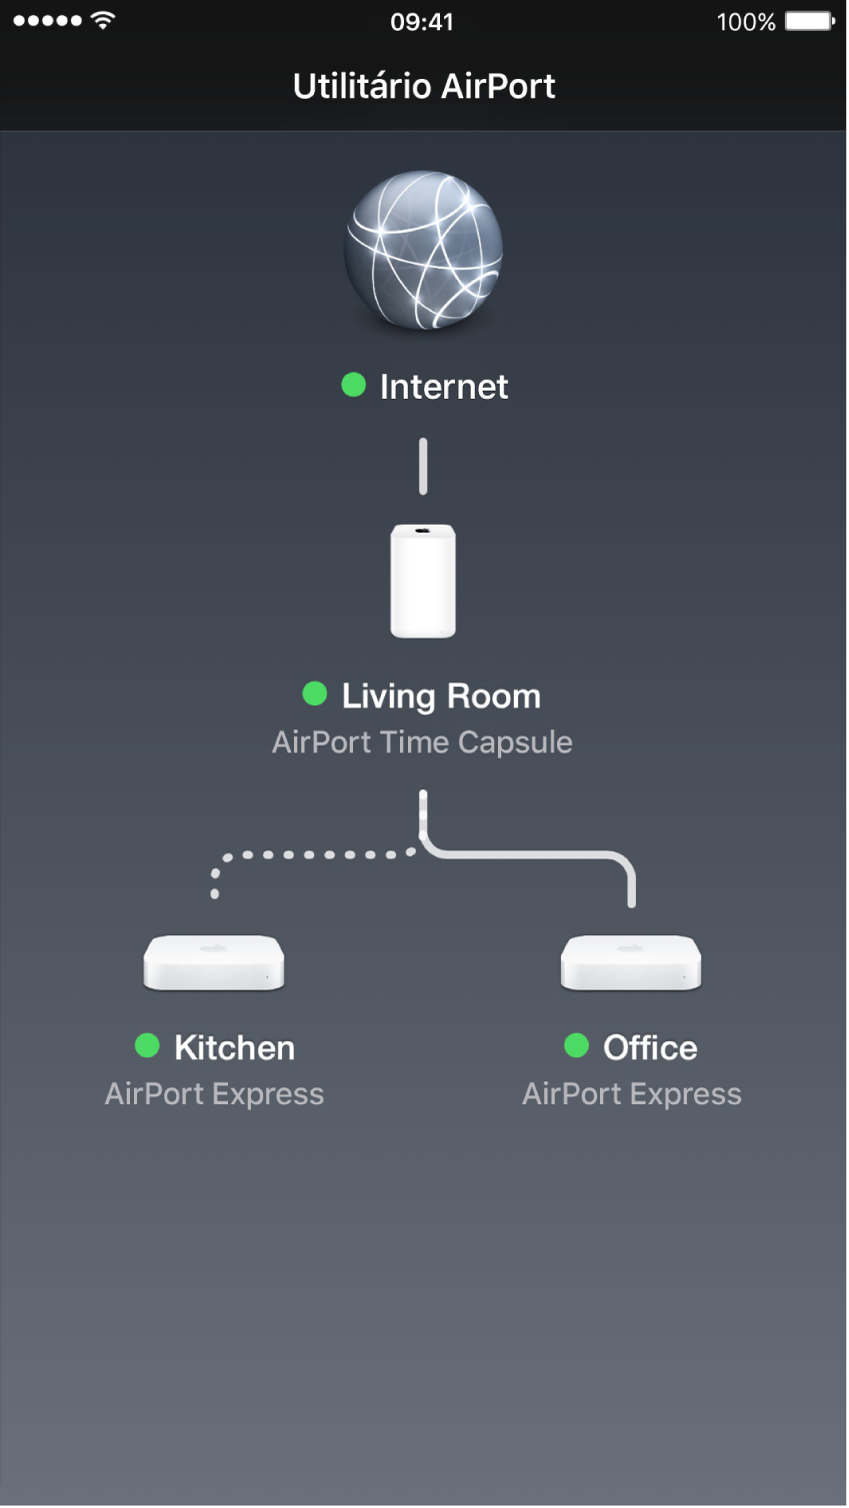 A visão geral no Utilitário AirPort para iOS